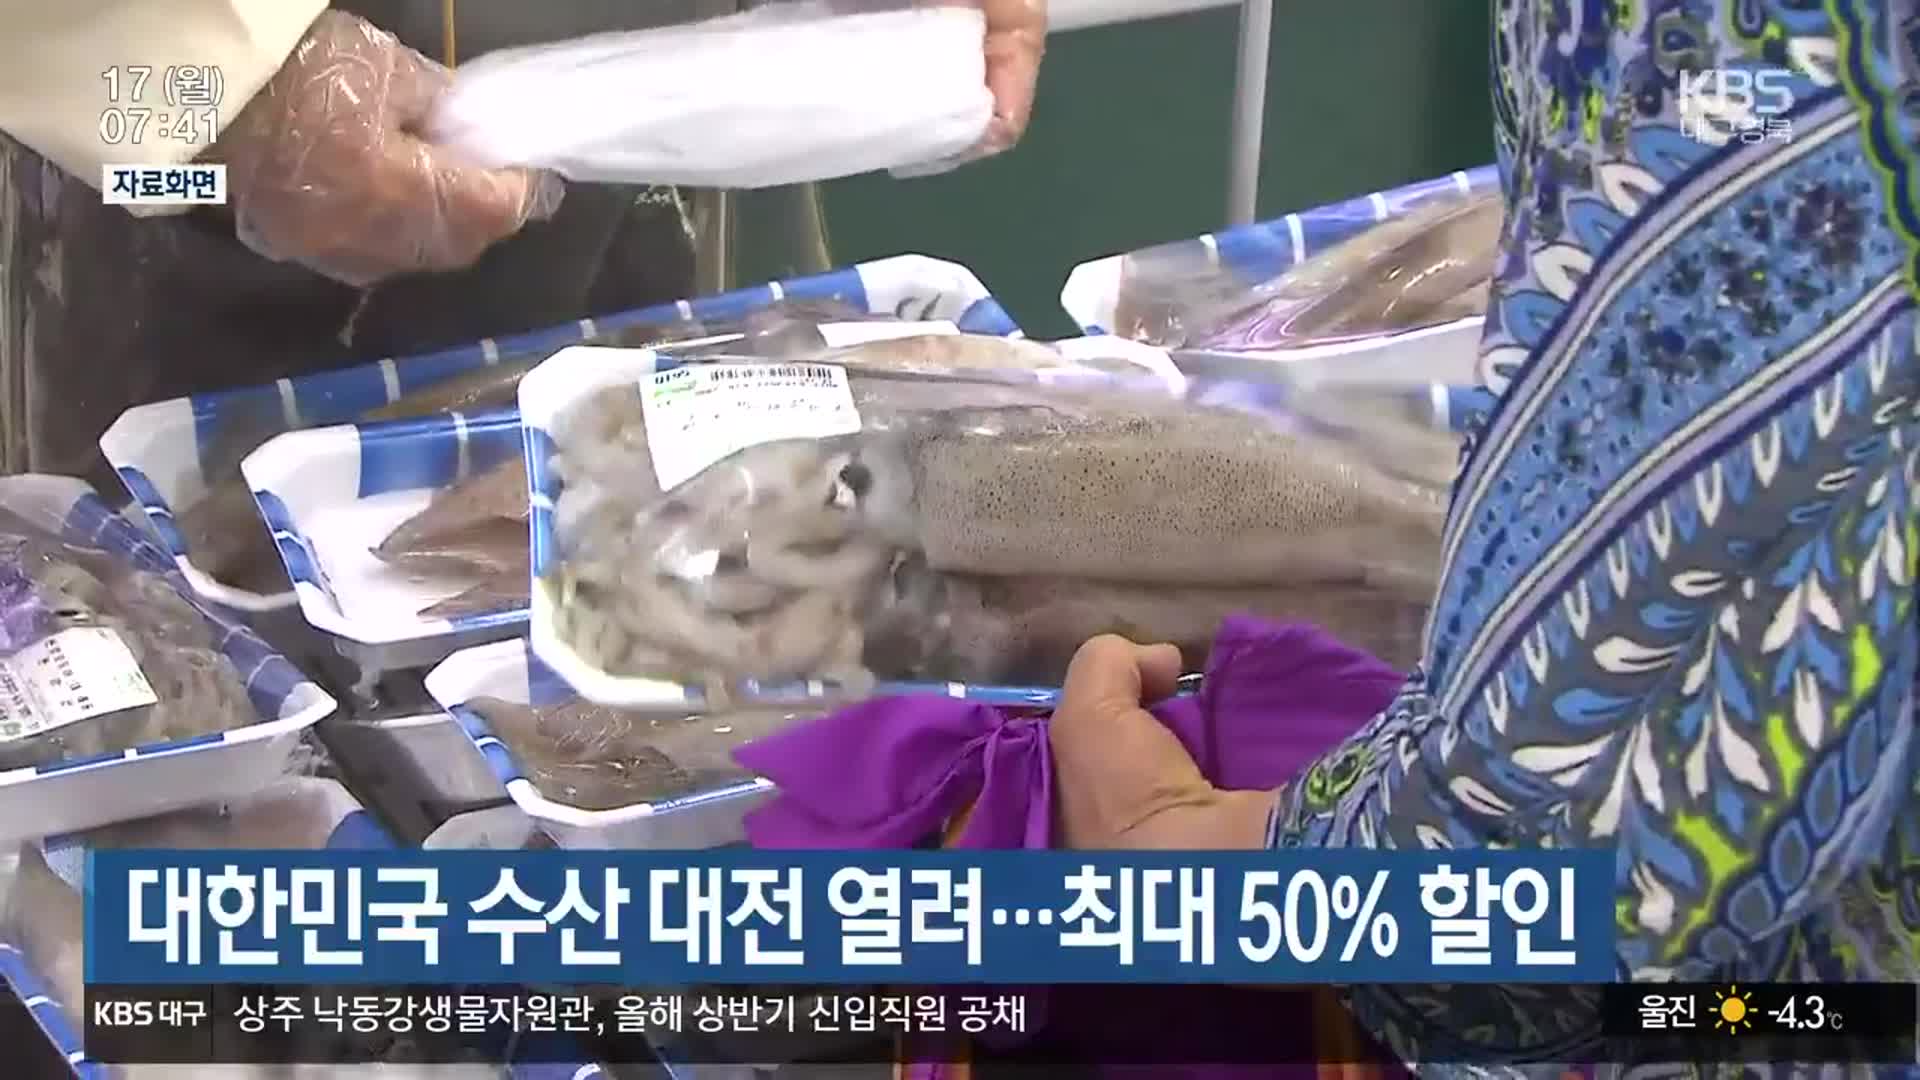 대한민국 수산 대전 열려…최대 50% 할인